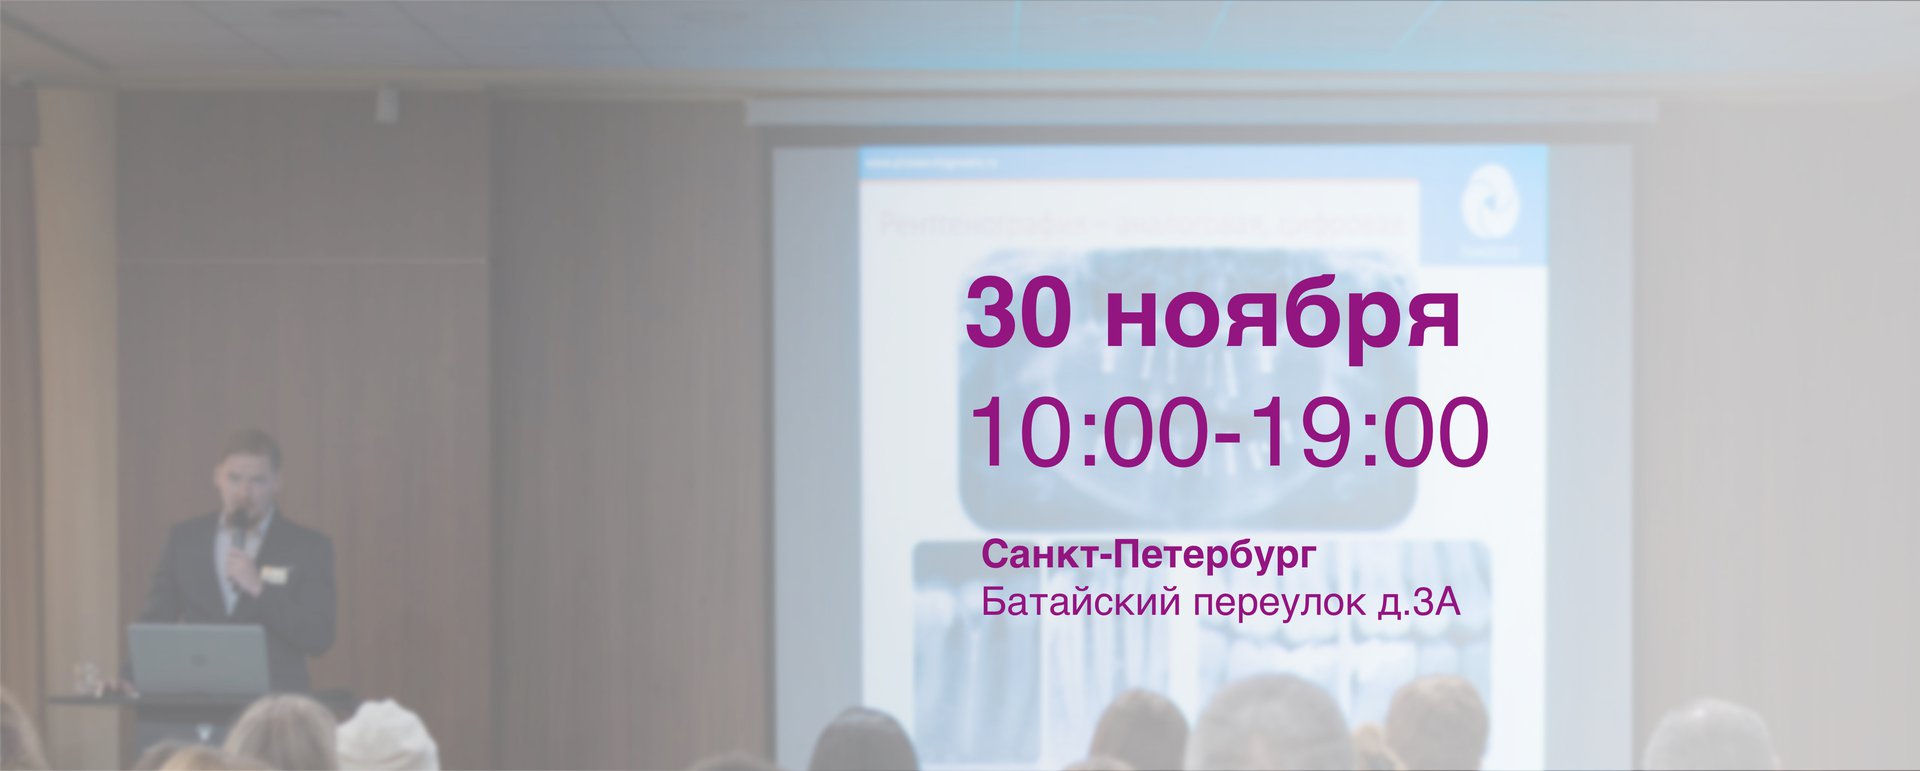 Углубленные семинары для стоматологов в Санкт-Петербурге